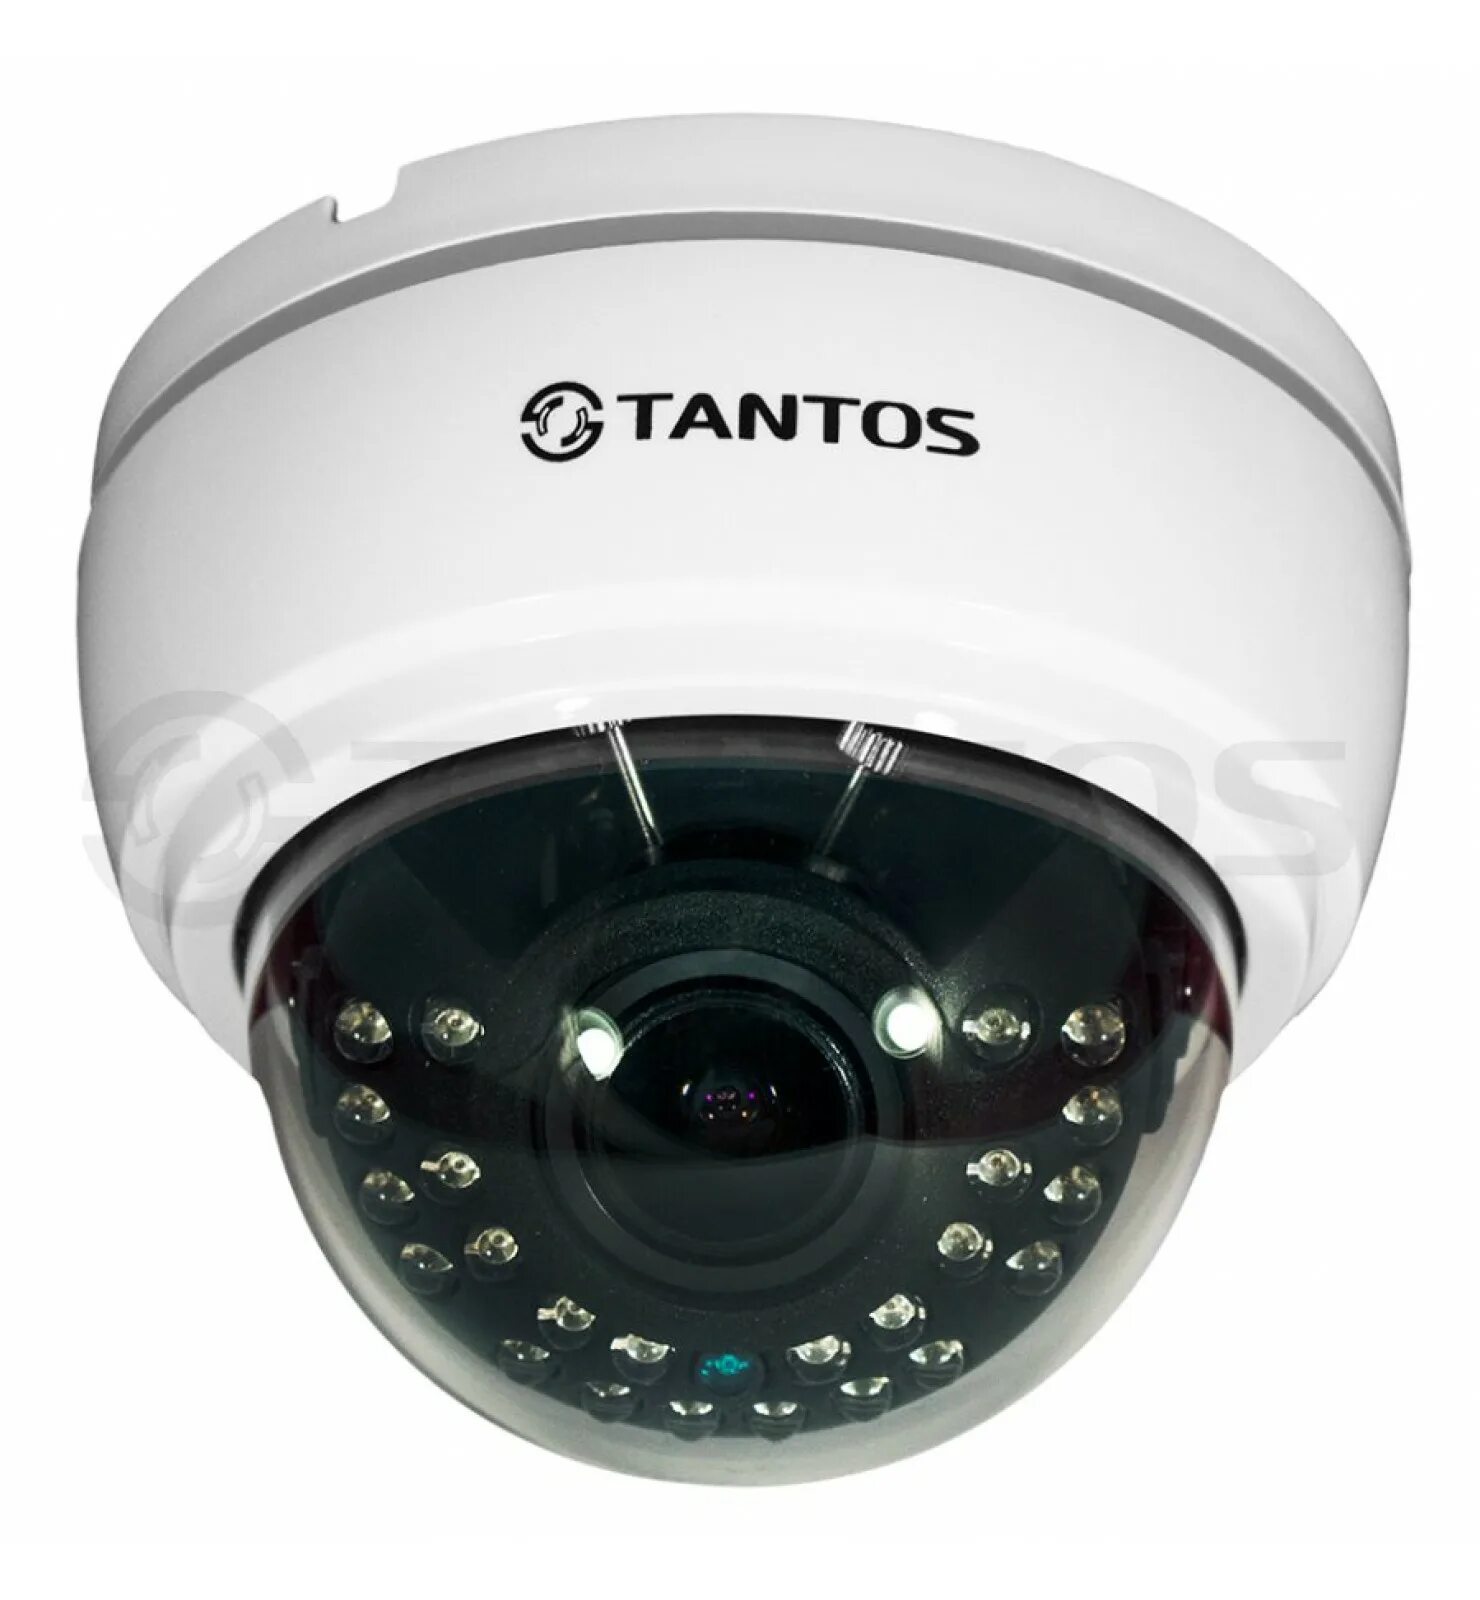 Цветная камера. TSC-di1080phdv (2.8-12) камера. Tantos TSC-di1080phdv (2.8-12). Купольная видеокамера TSC -di1080puvcv. Tantos TSC-p720phdf (2.8).